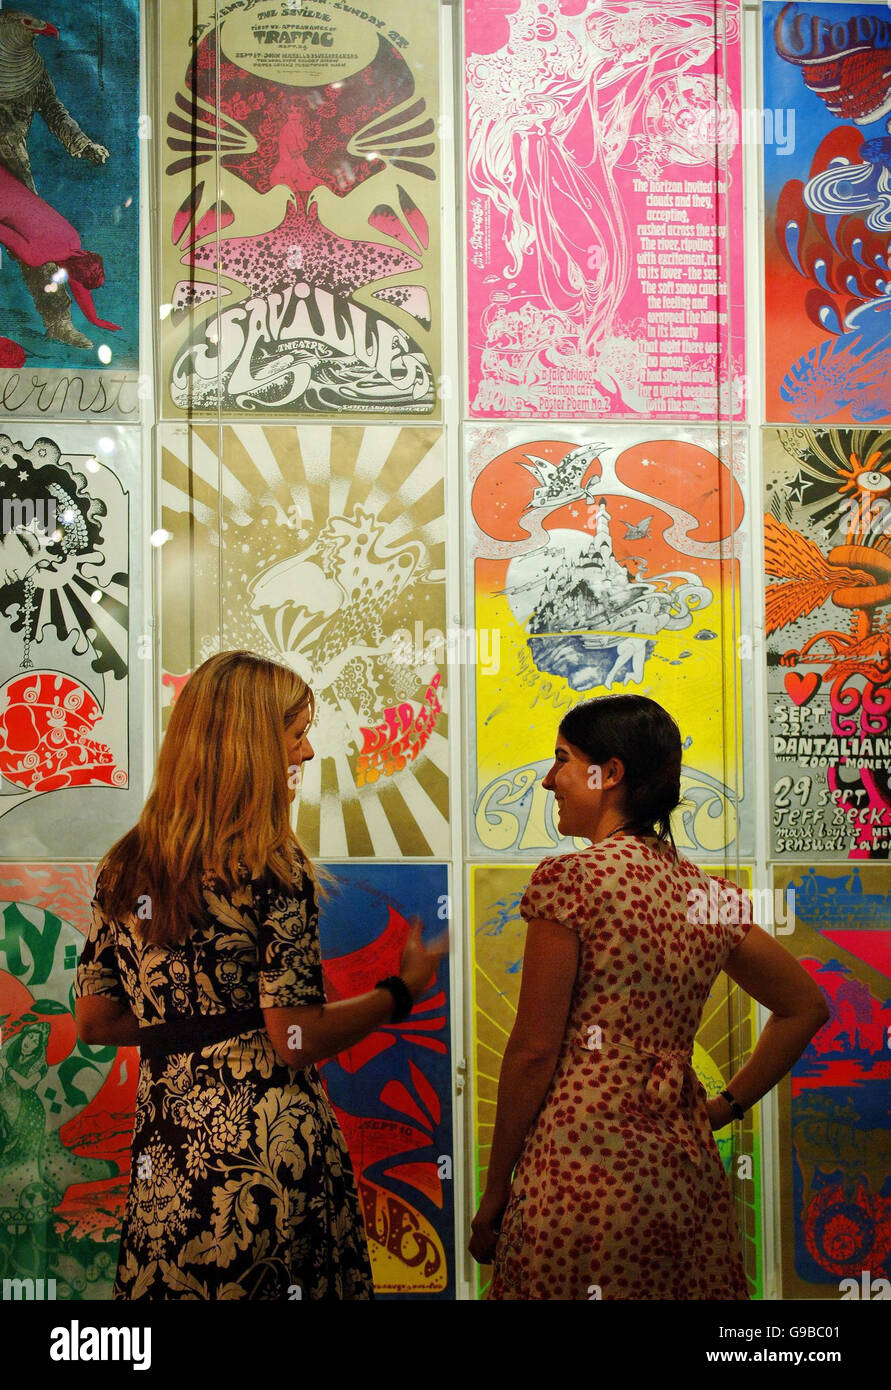 Besucher diskutieren die grafischen Plakate verschiedener Künstler aus den späten 60er Jahren im Rahmen einer Sixties Graphics Ausstellung, die am 7. Juni im Victoria & Albert Museum in London eröffnet wird. Stockfoto